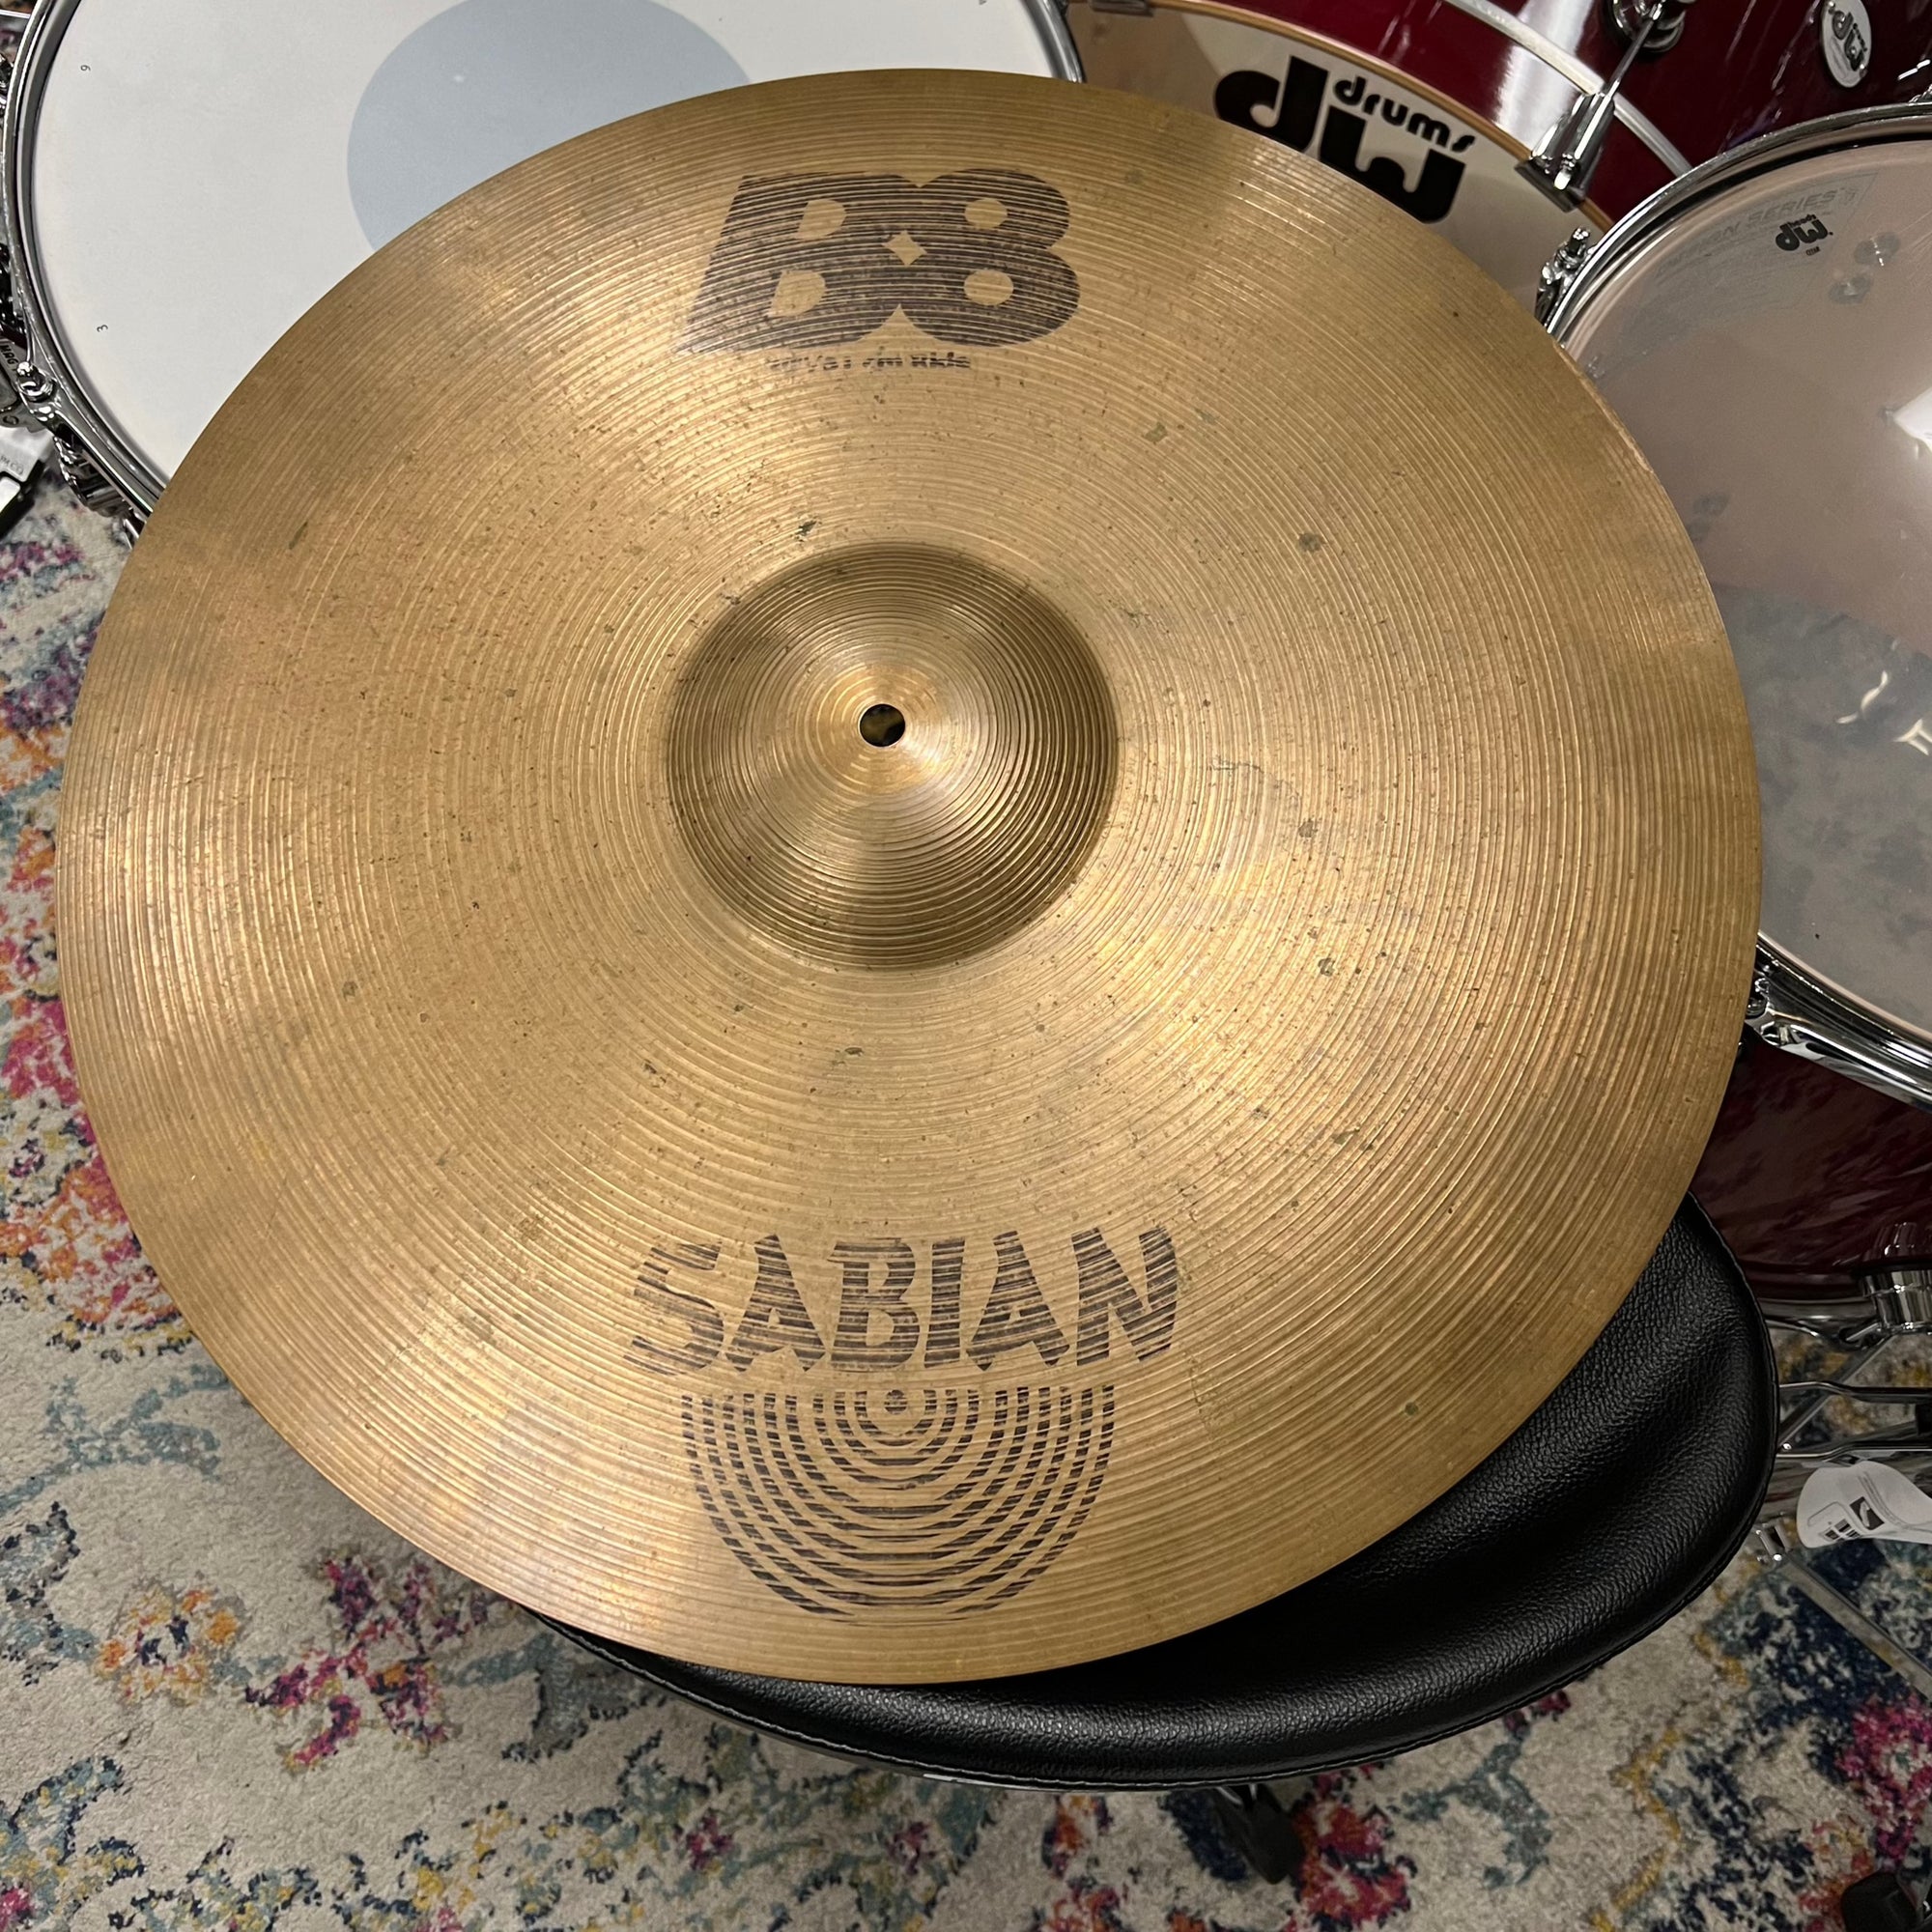 Sabian 20” B8 ride cymbal